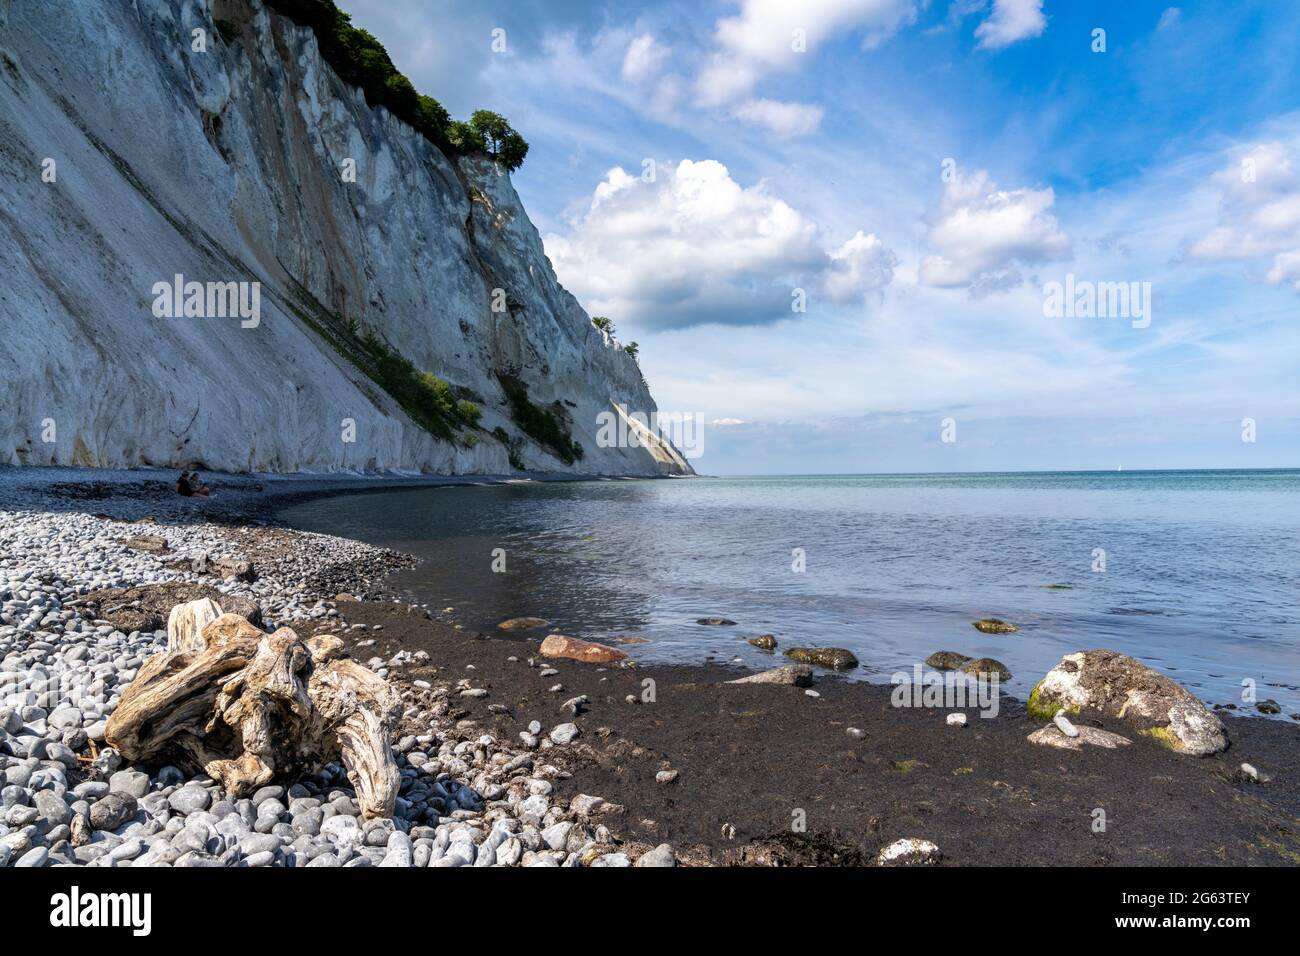 De belles hautes falaises de pierre blanche tombent sur une plage rocheuse avec un océan calme et du bois flotté en premier plan Banque D'Images